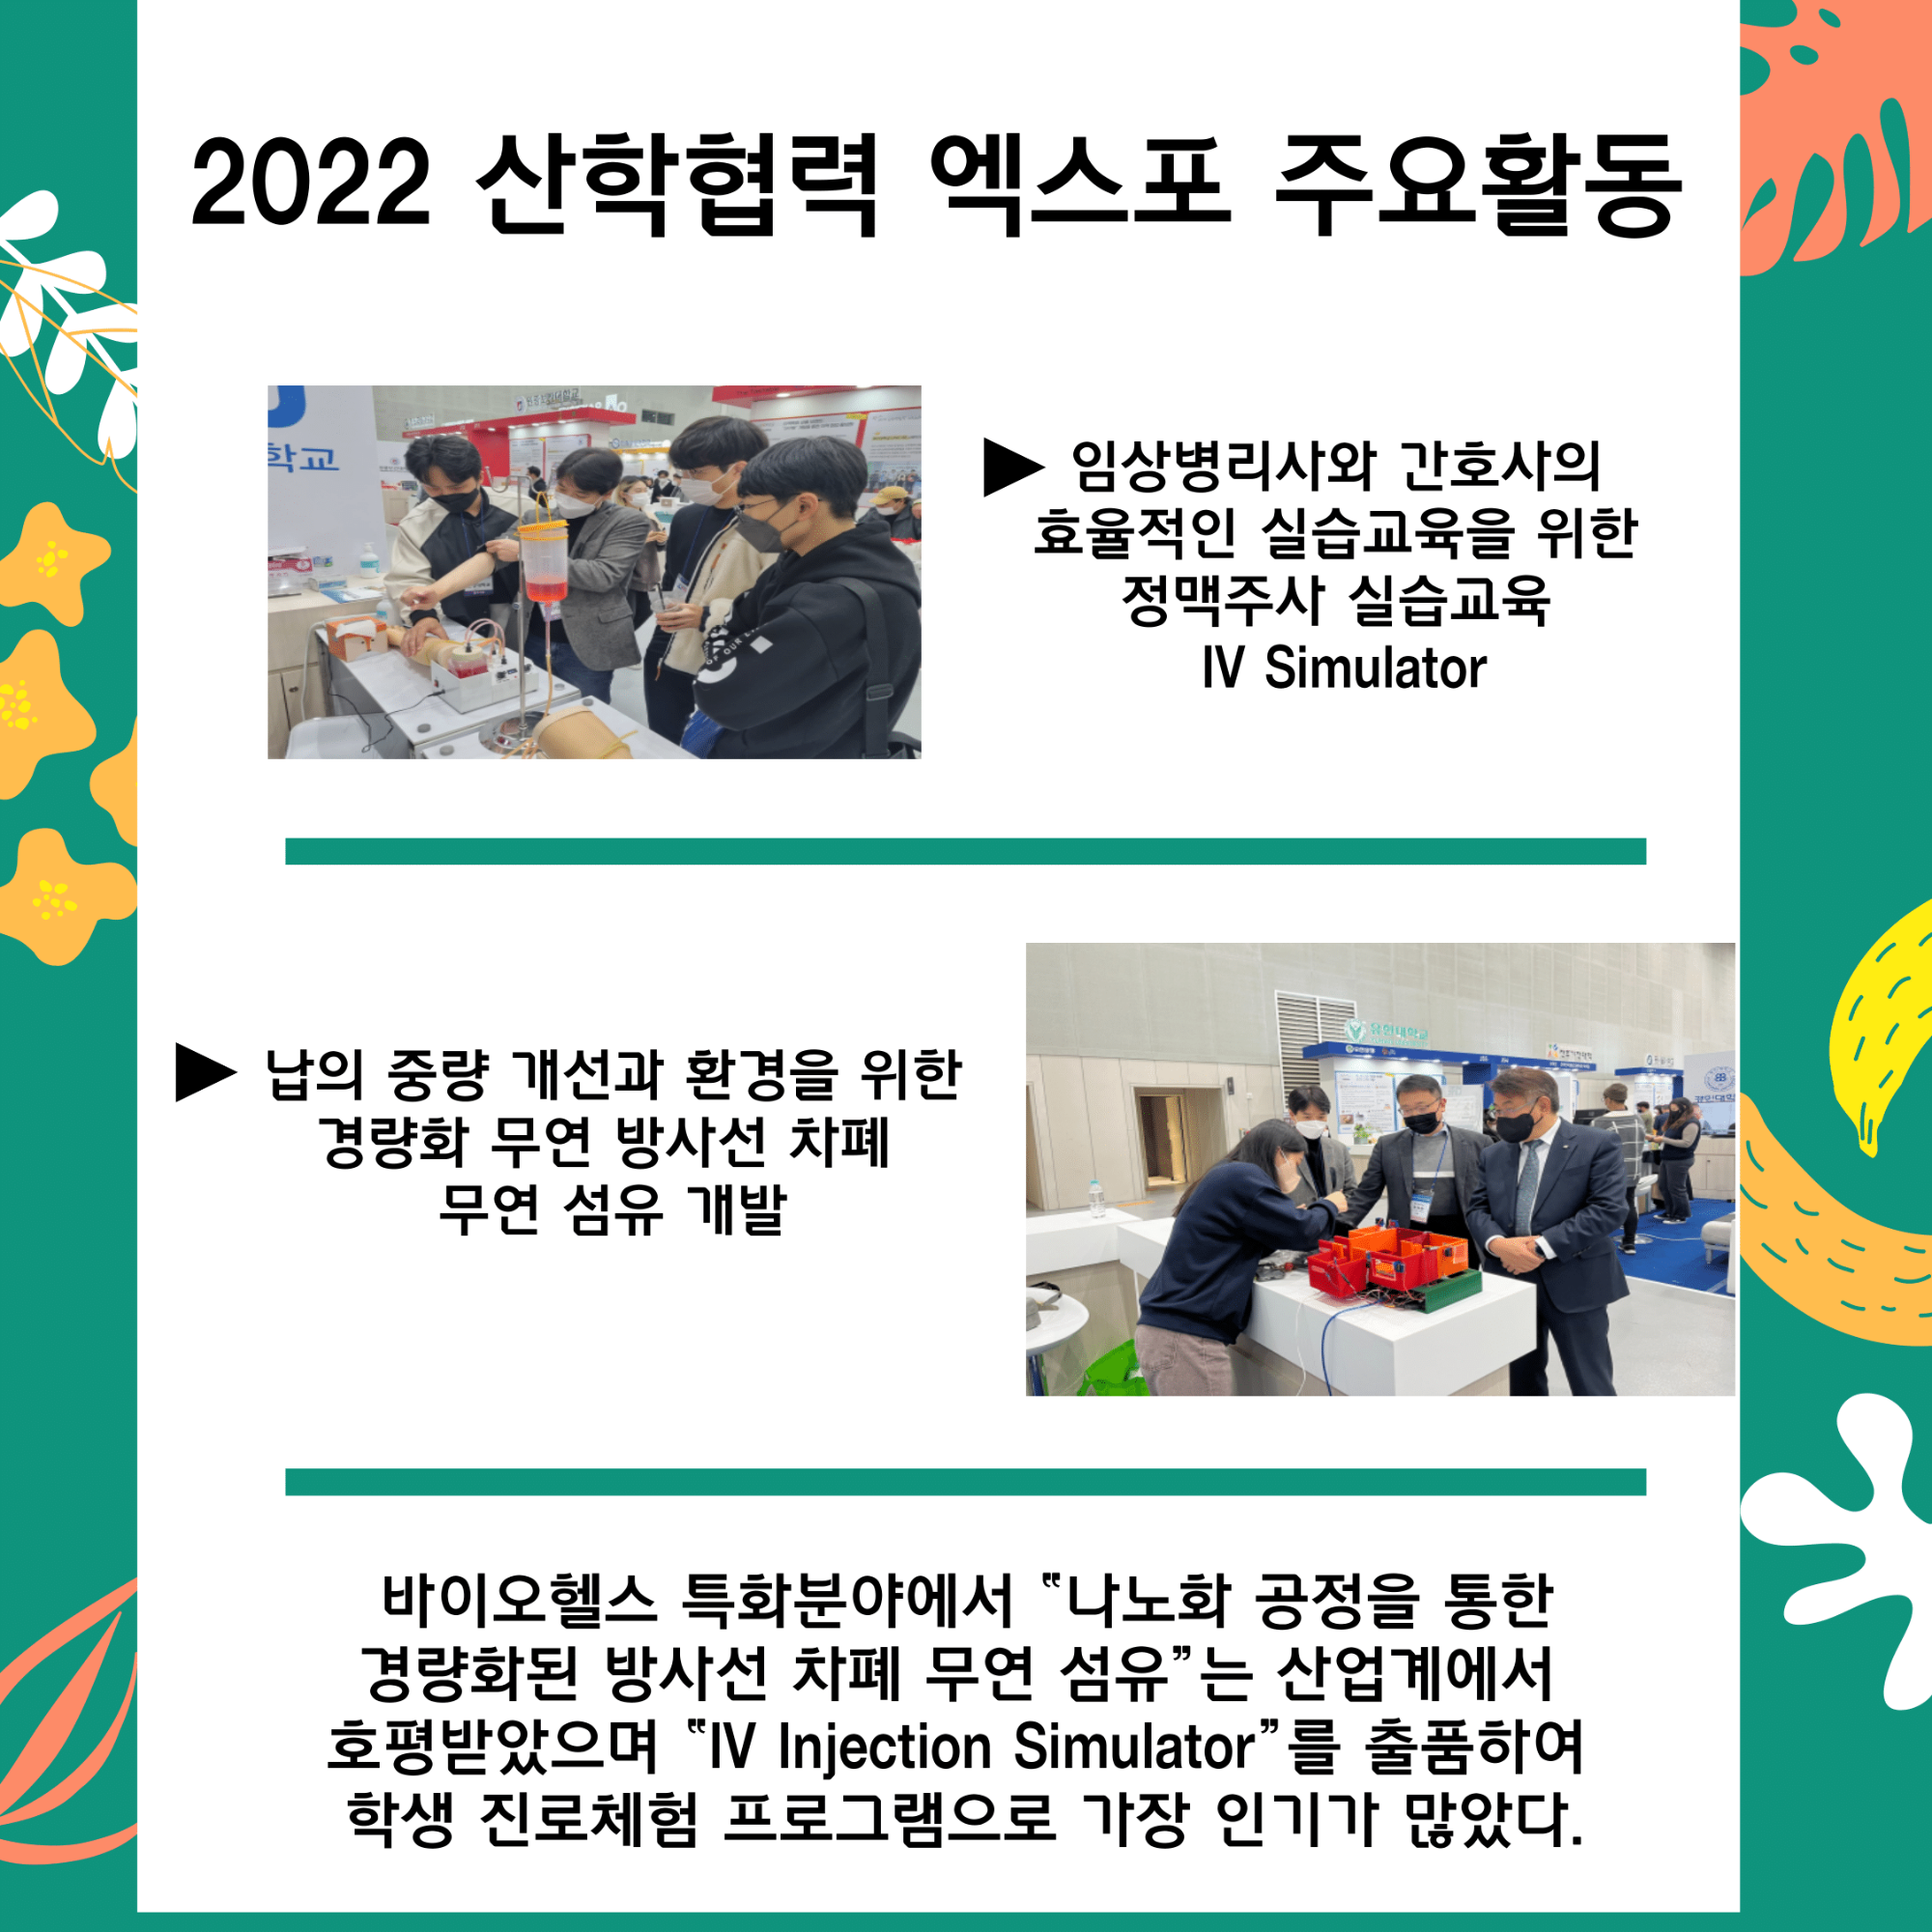 167호 2022 산학협력 EXPO LINK 3.0 사업우수성과 전시_최최종본-3.png